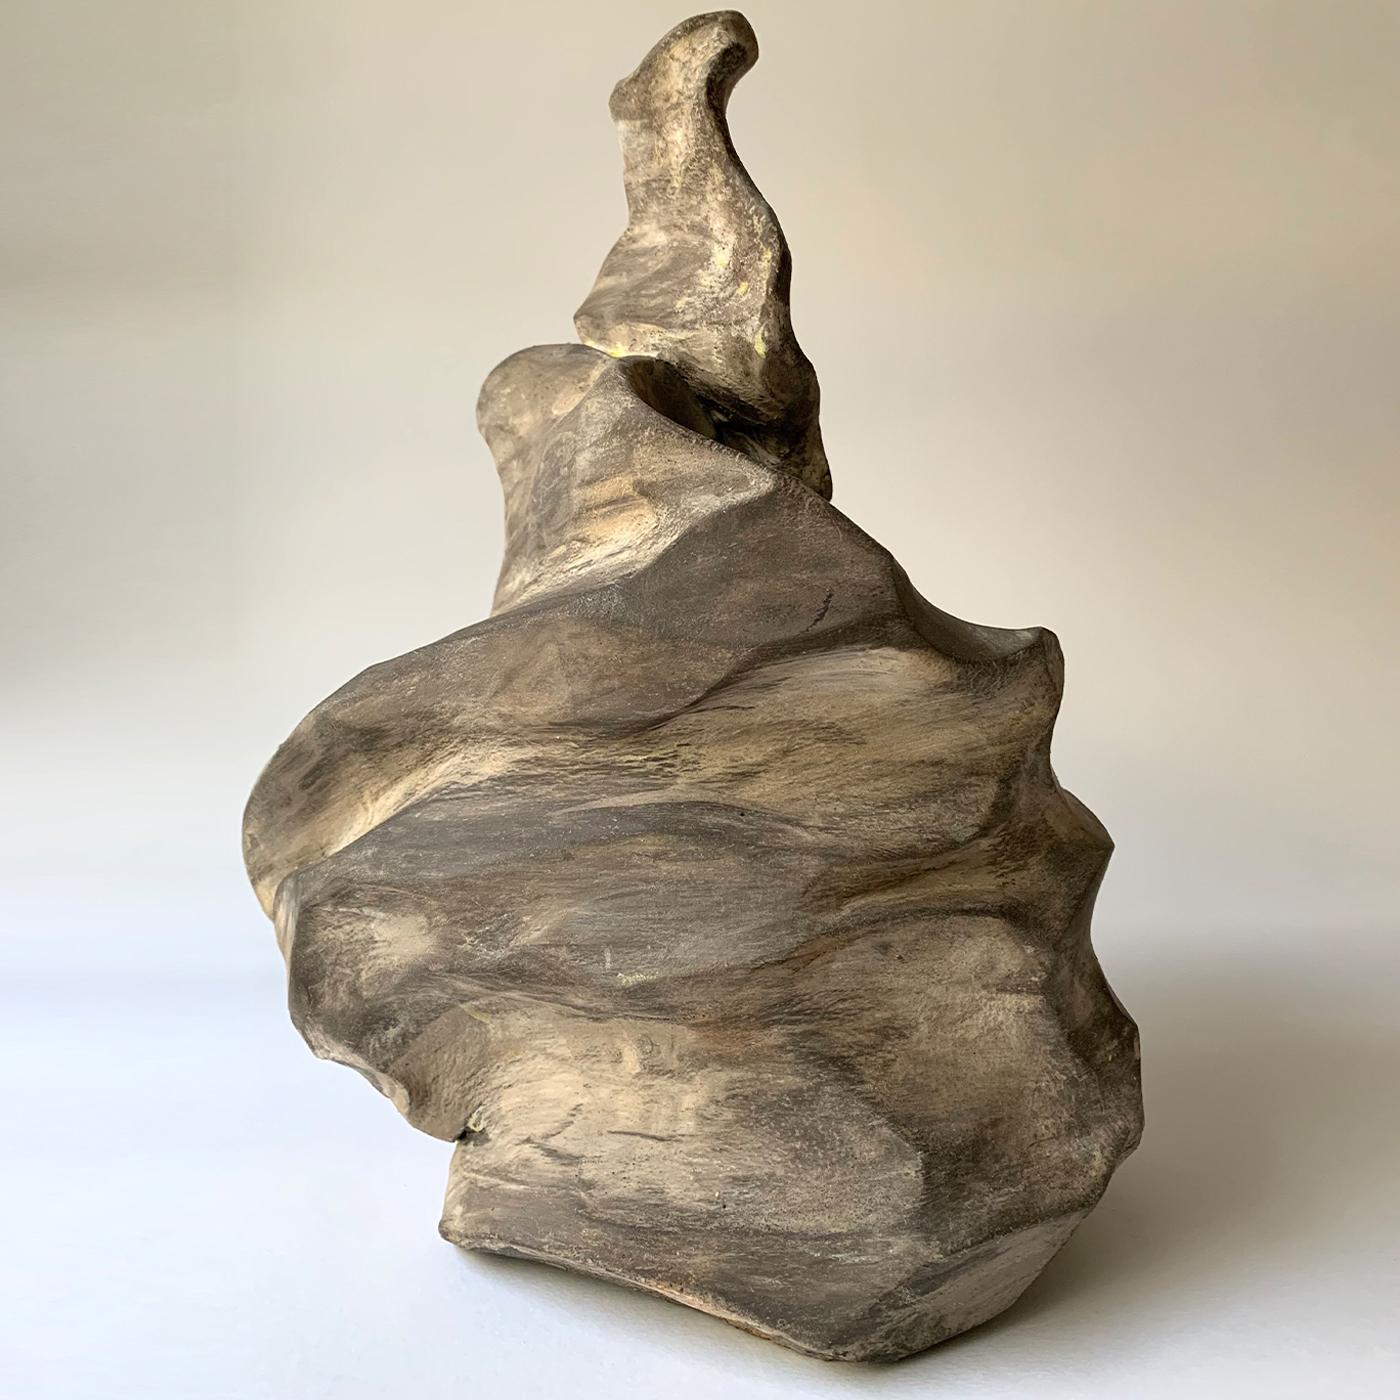 L'étonnante sculpture Gaia est une œuvre d'art unique de Silvia Garau qui, à partir d'un seul bloc d'argile, a travaillé dur et avec passion en utilisant des gestes en spirale pour obtenir cette forme captivante et tout à fait fascinante. Fabriqué à